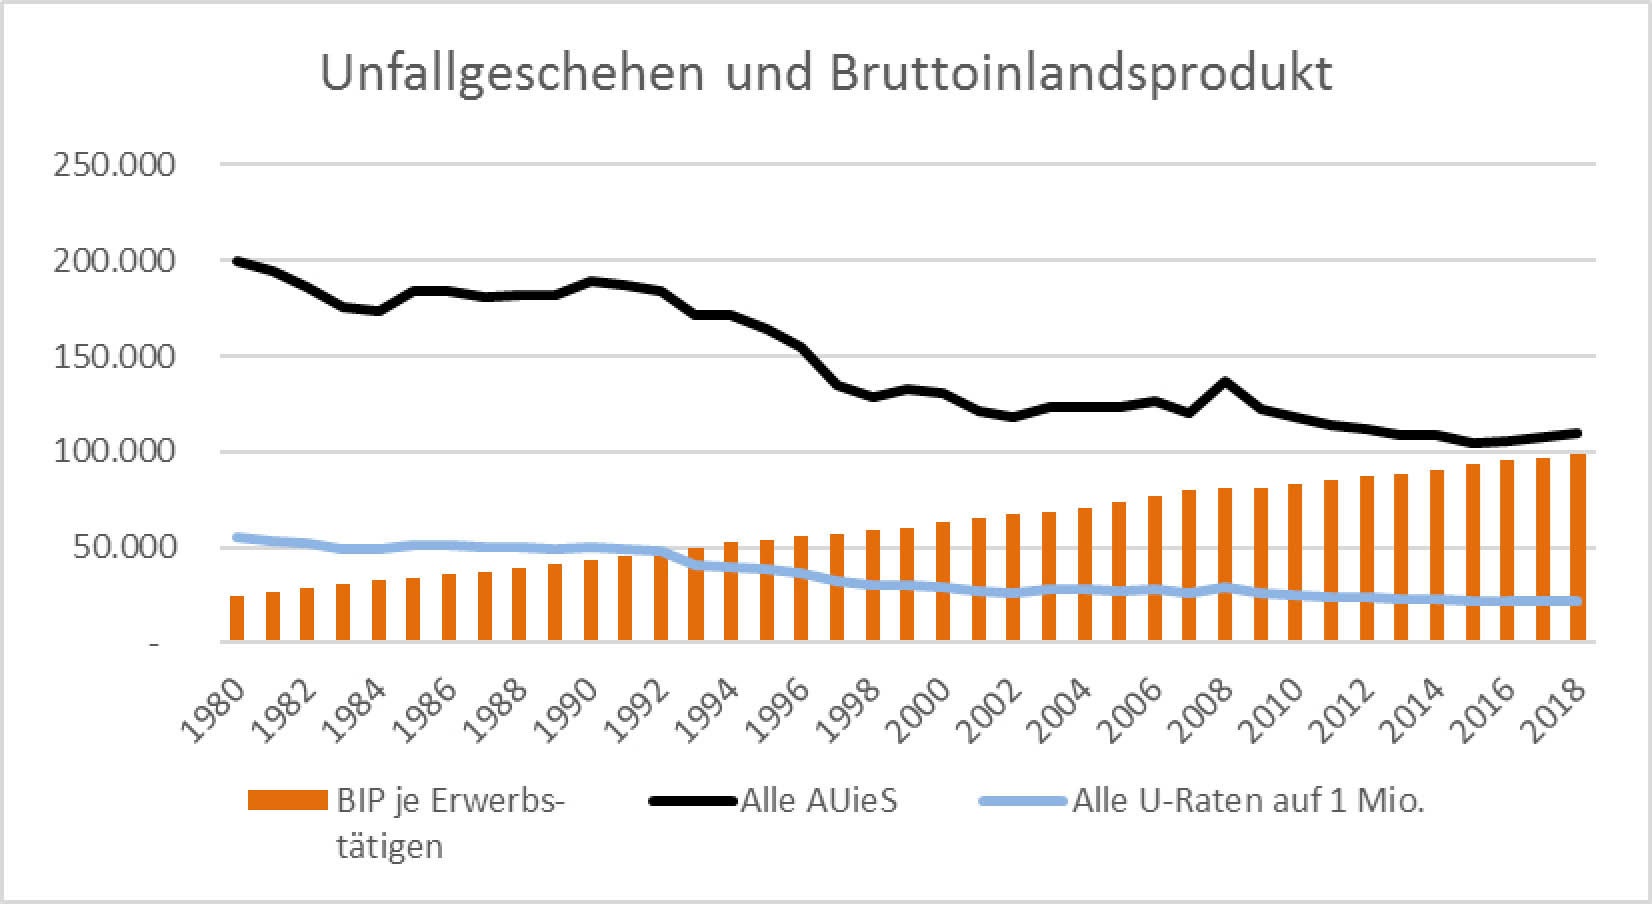 Abbildung 5: Unfallgeschehen und Bruttoinlandsprodukt seit 1980